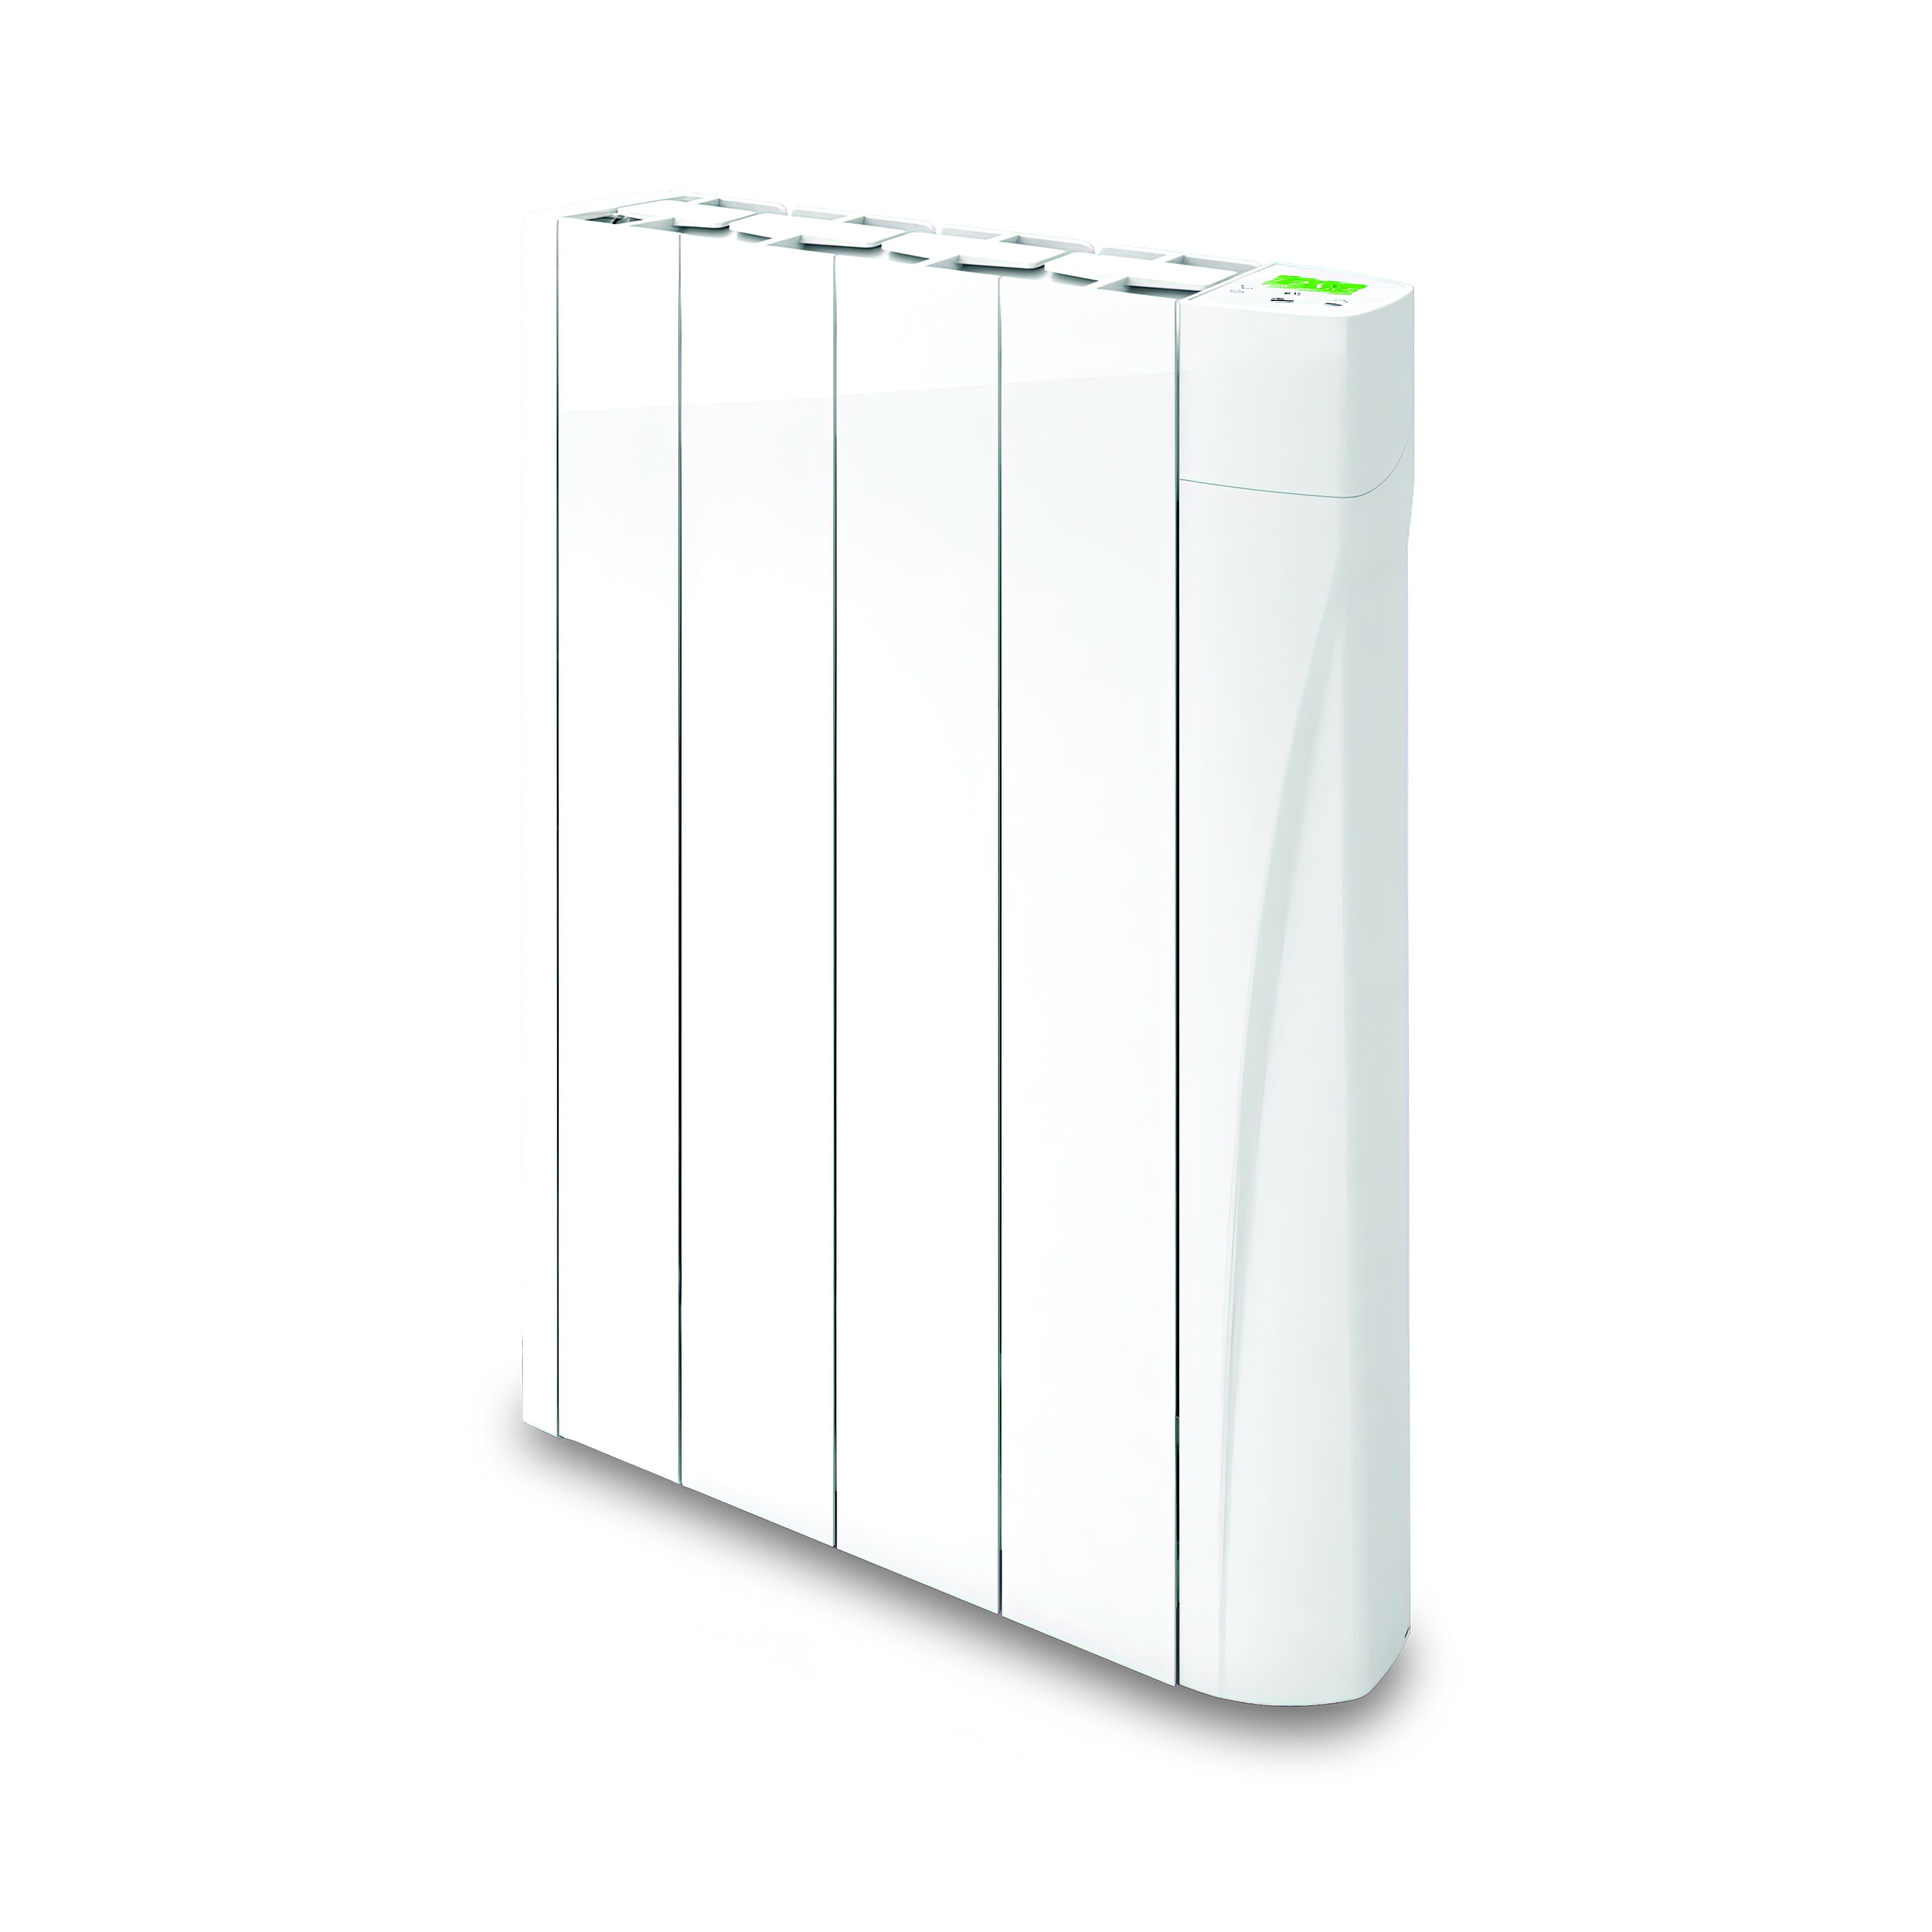 TCP Smart Mains fed 0.5kW White Oil-filled radiator